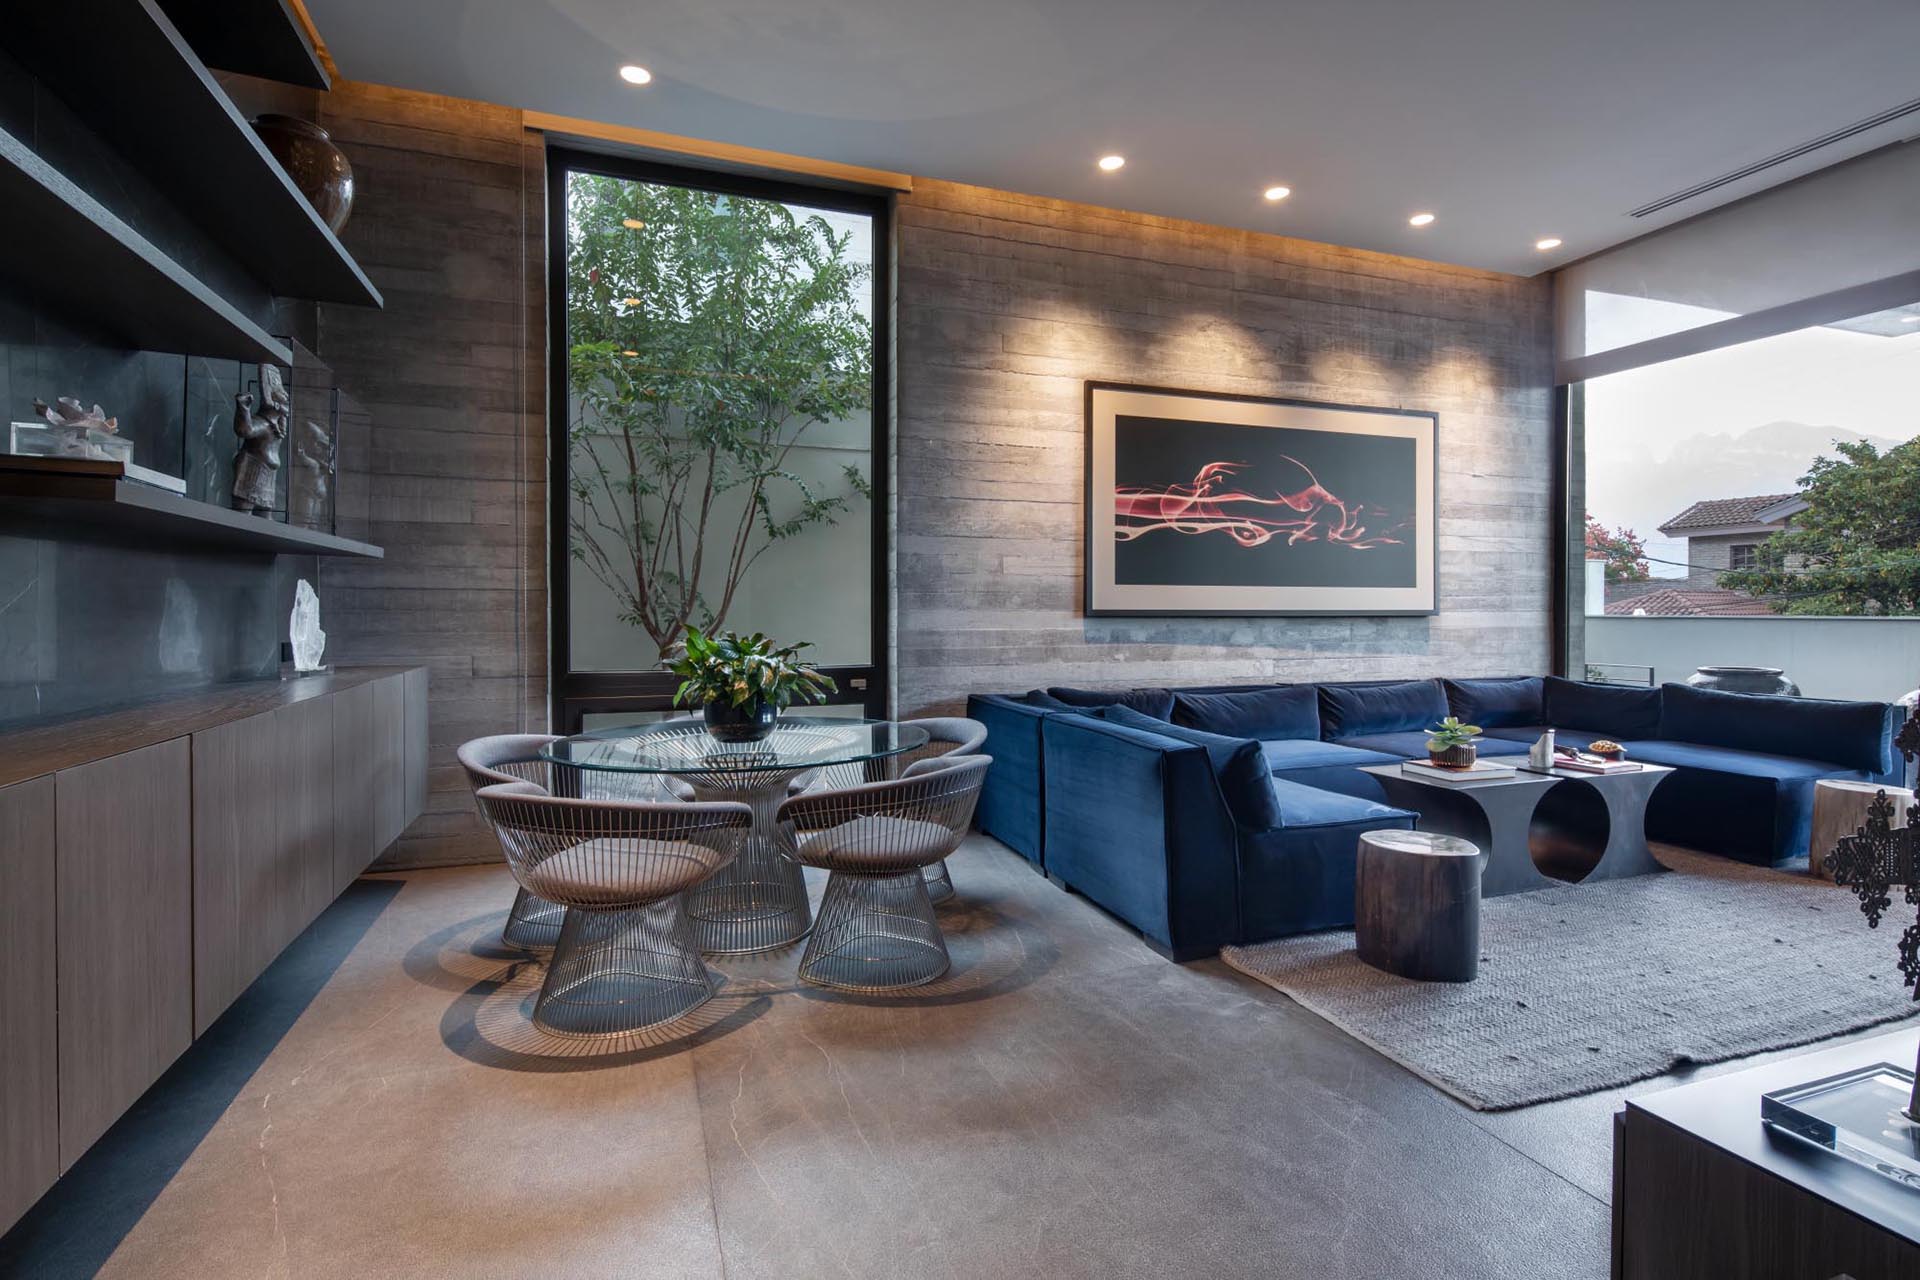 Современная гостиная с U-образным синим диваном, обеденной зоной и бетонной стеной в форме доски.